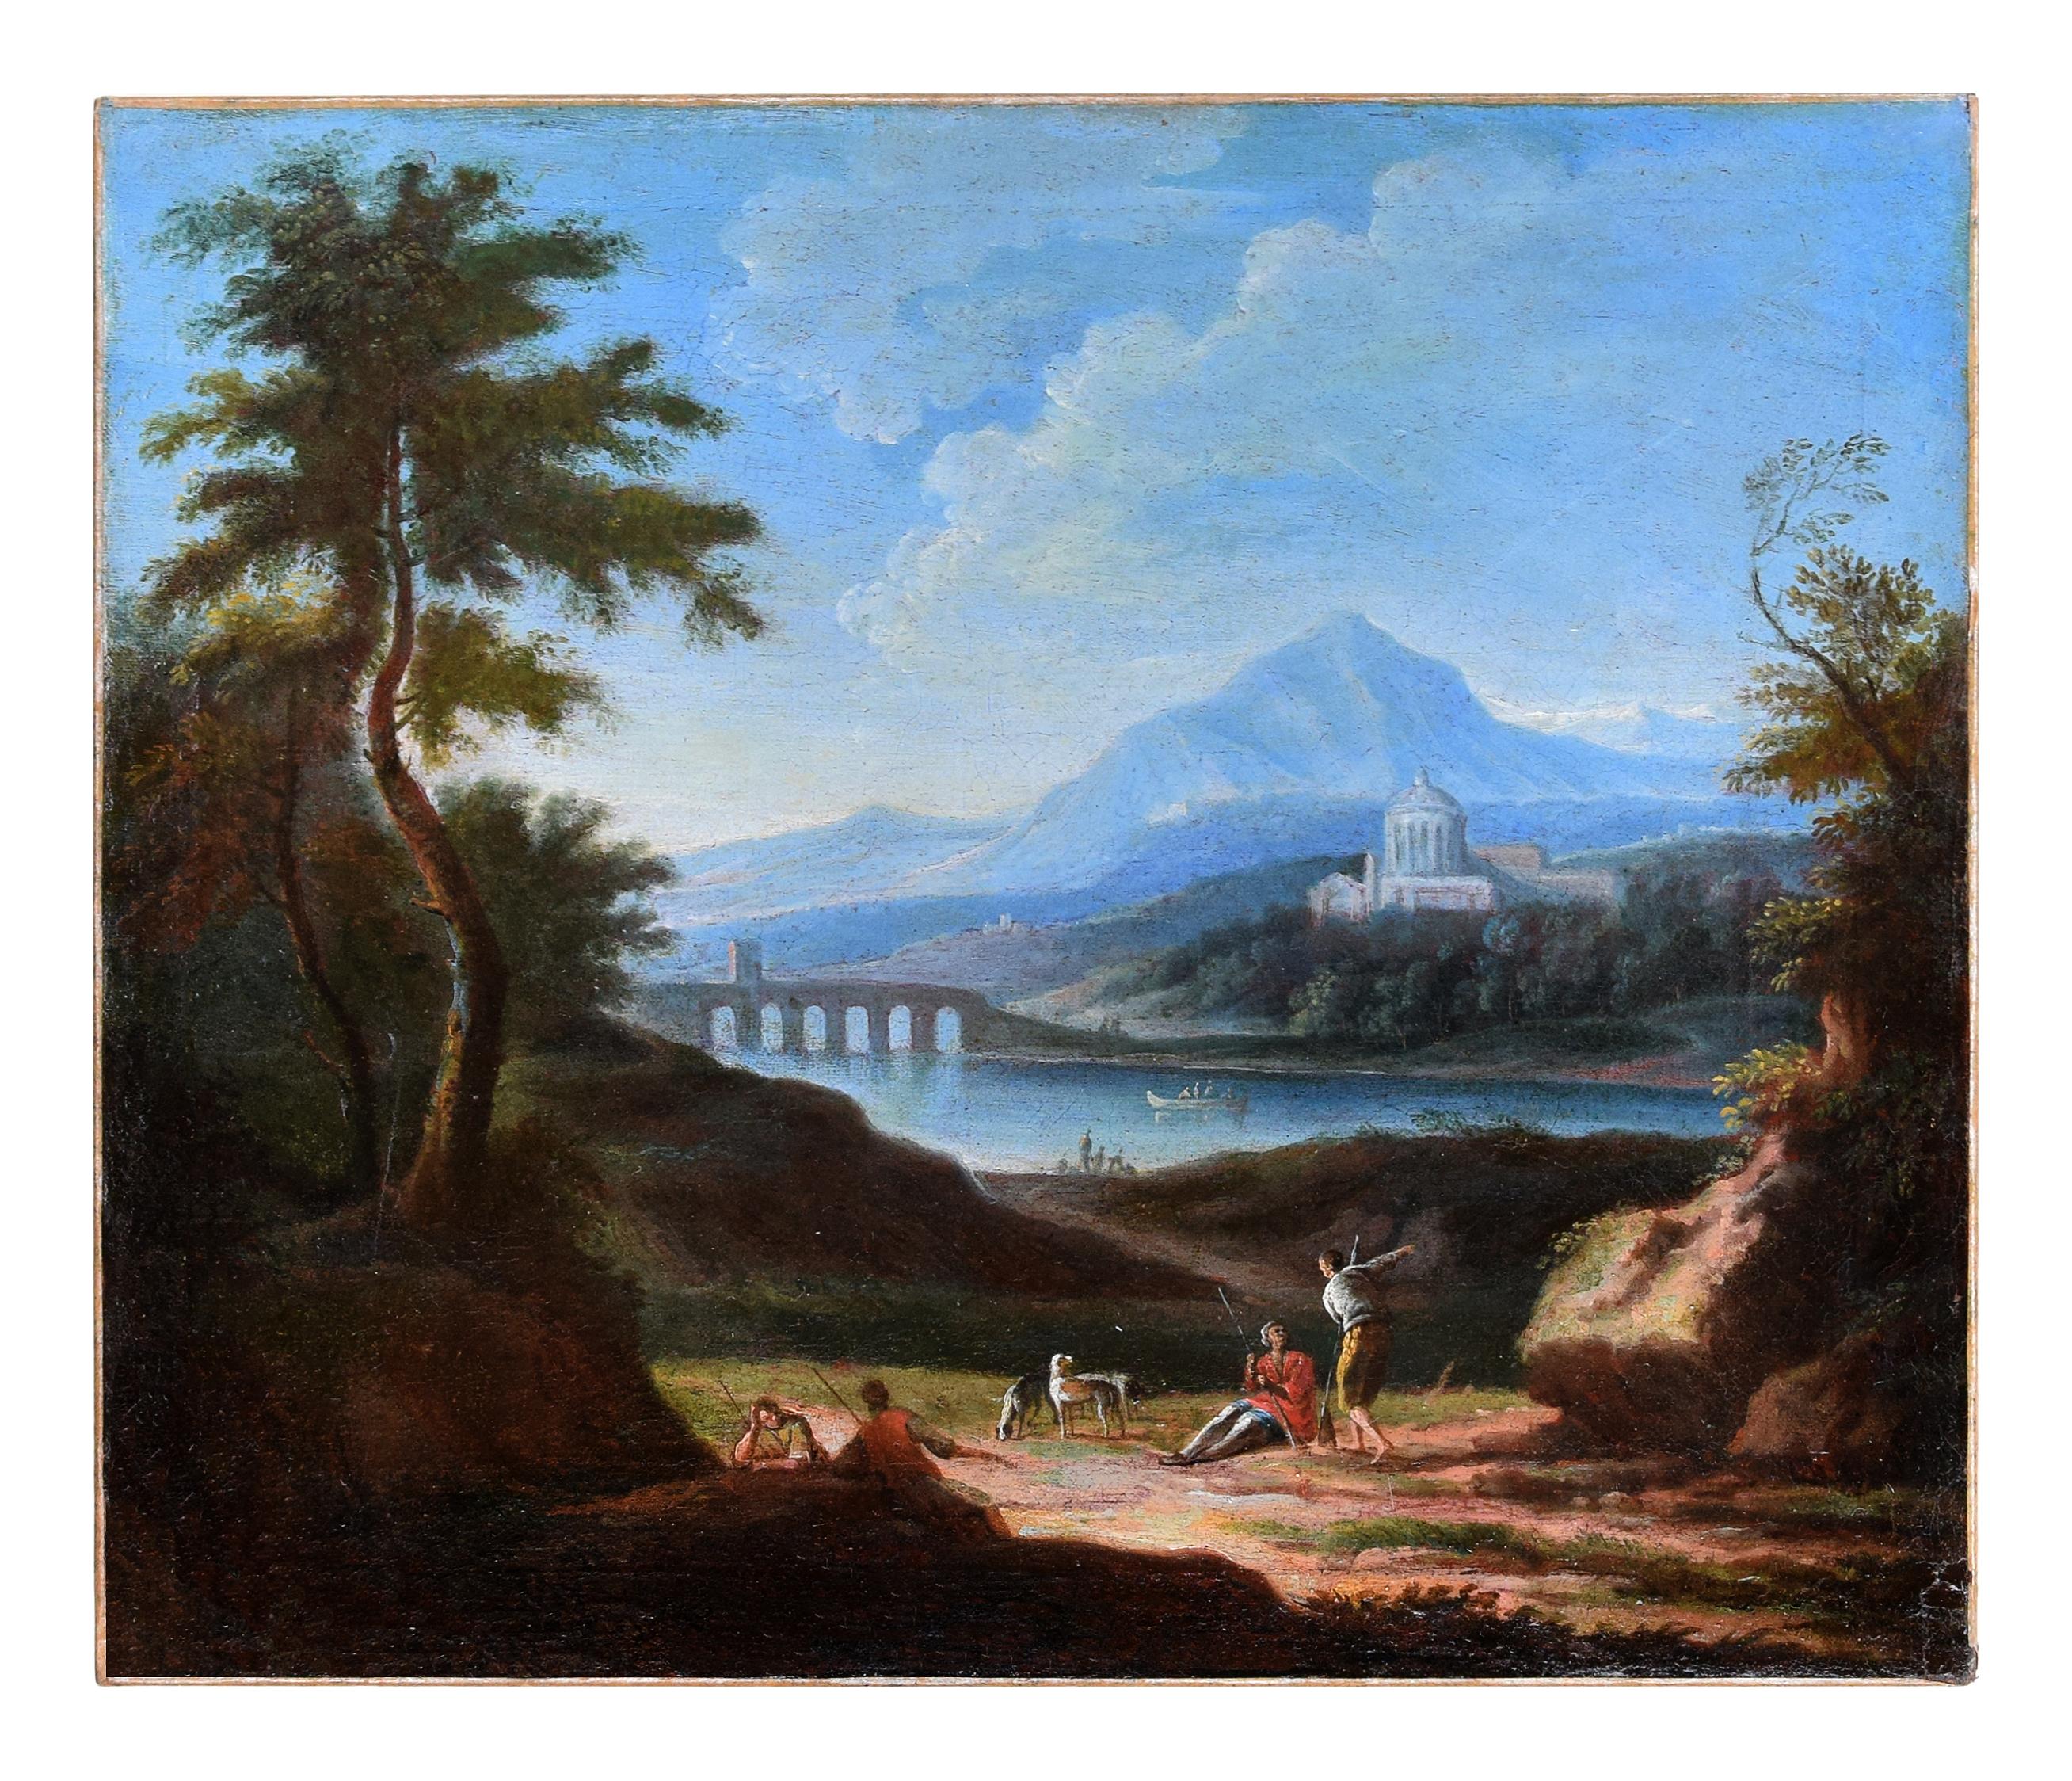 Deux paysages arcadiques - J.F. Van Bloemen (admiré de) - Huile sur toile  - Maîtres anciens Painting par Jan Frans van Bloemen (Orizzonte)